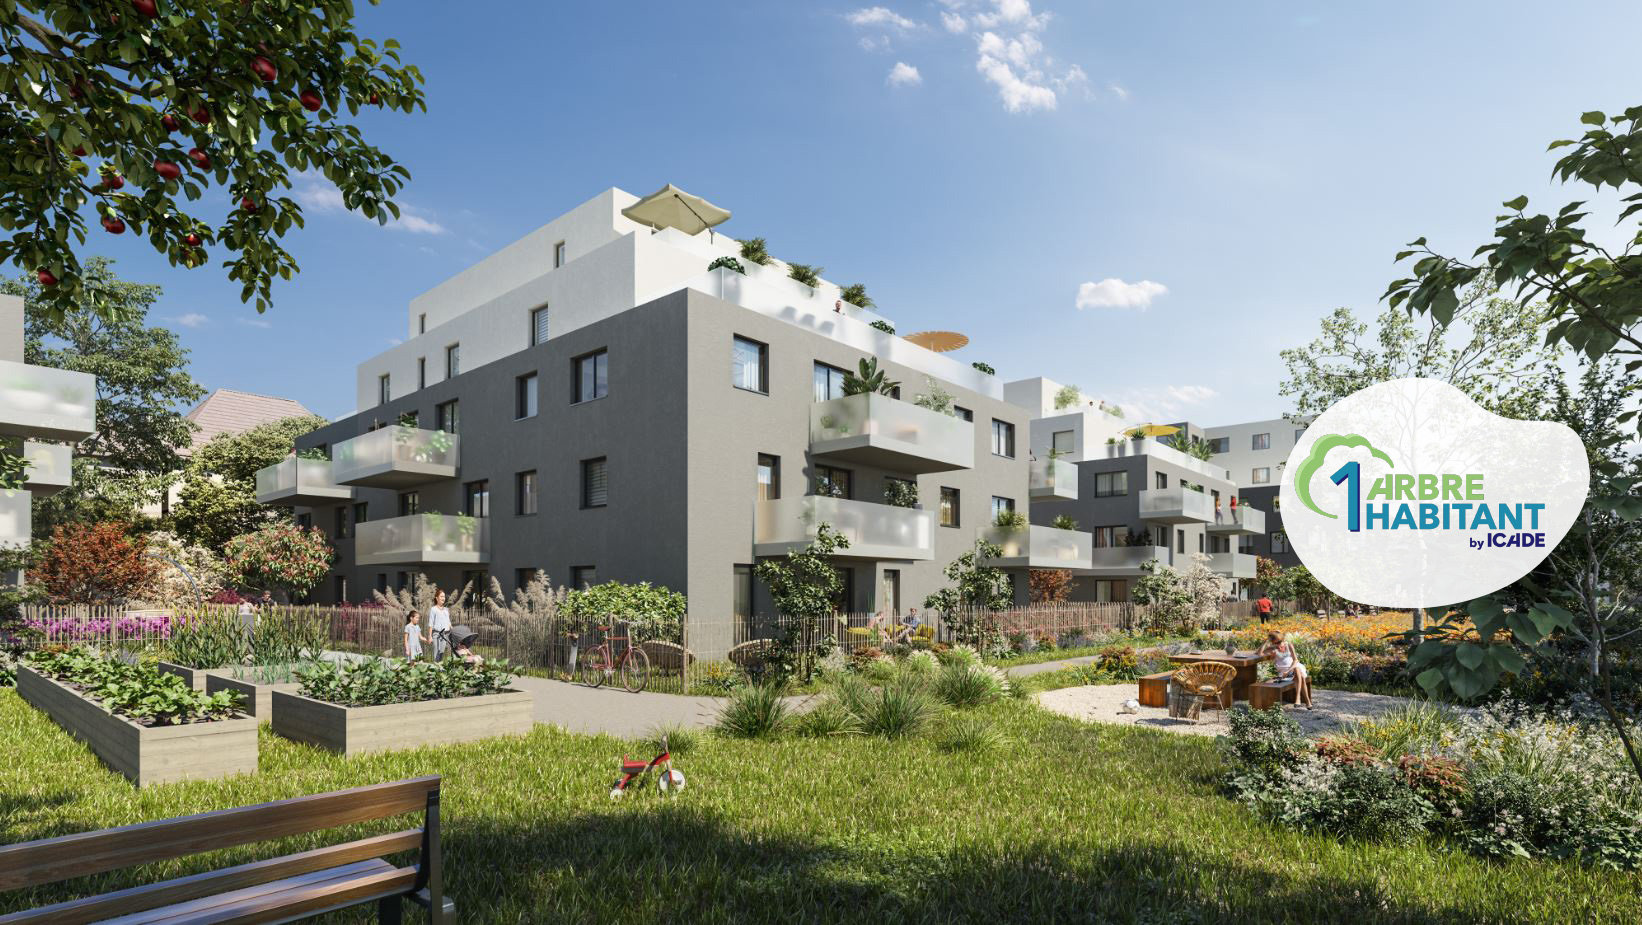 Urban Green (2 à 4 pièces, 44 à 88 m²) Bischheim